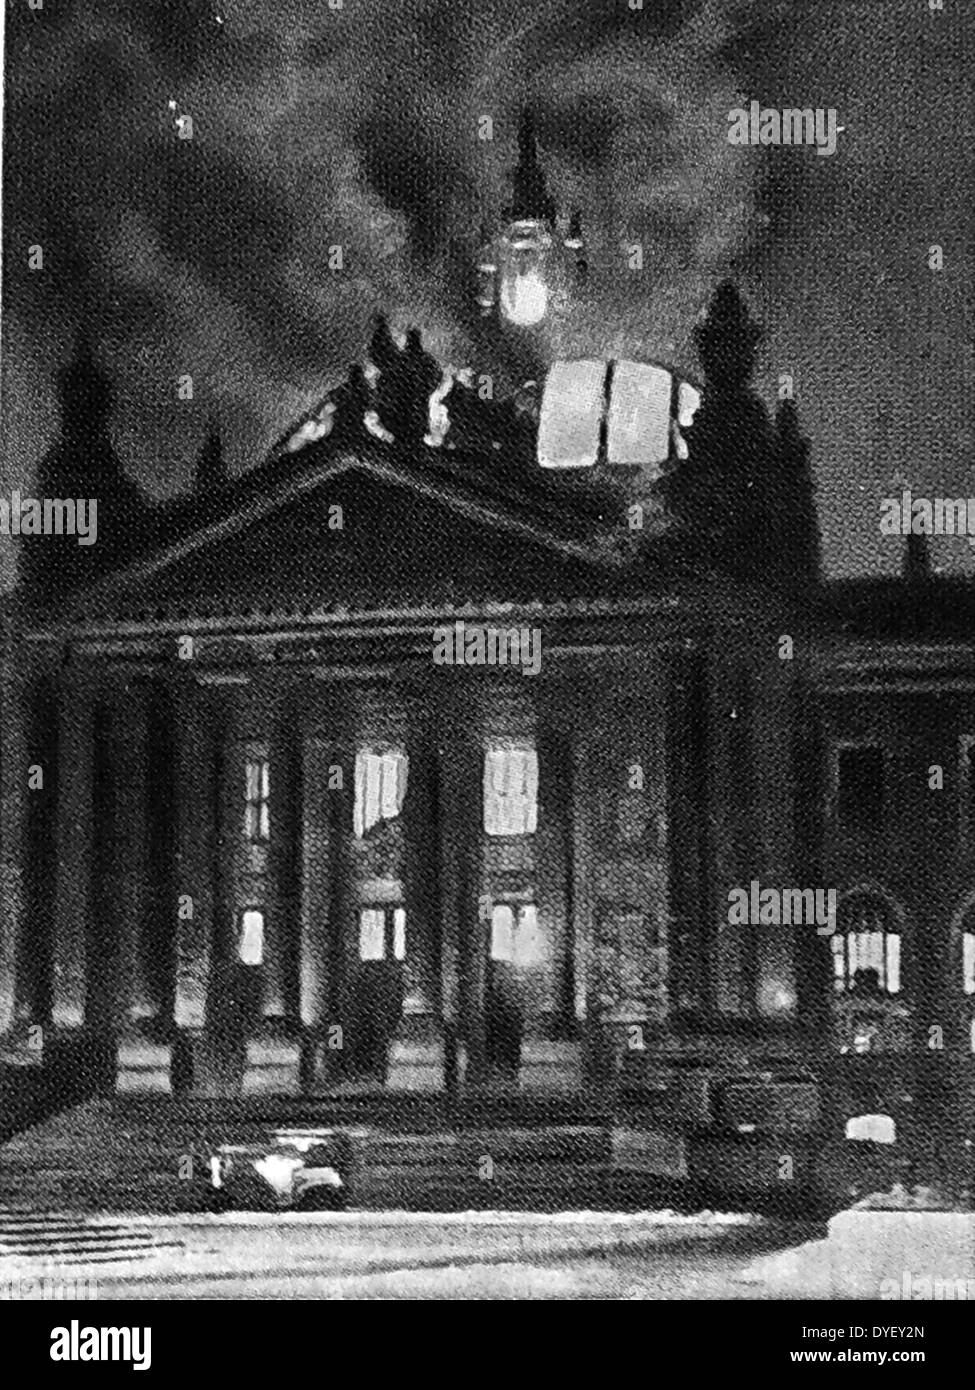 L'incendie du Reichstag était d'un incendie criminel dans le bâtiment du Reichstag à Berlin, le 27 février 1933. L'événement est considérée comme essentielle à la mise en place de l'Allemagne nazie Banque D'Images